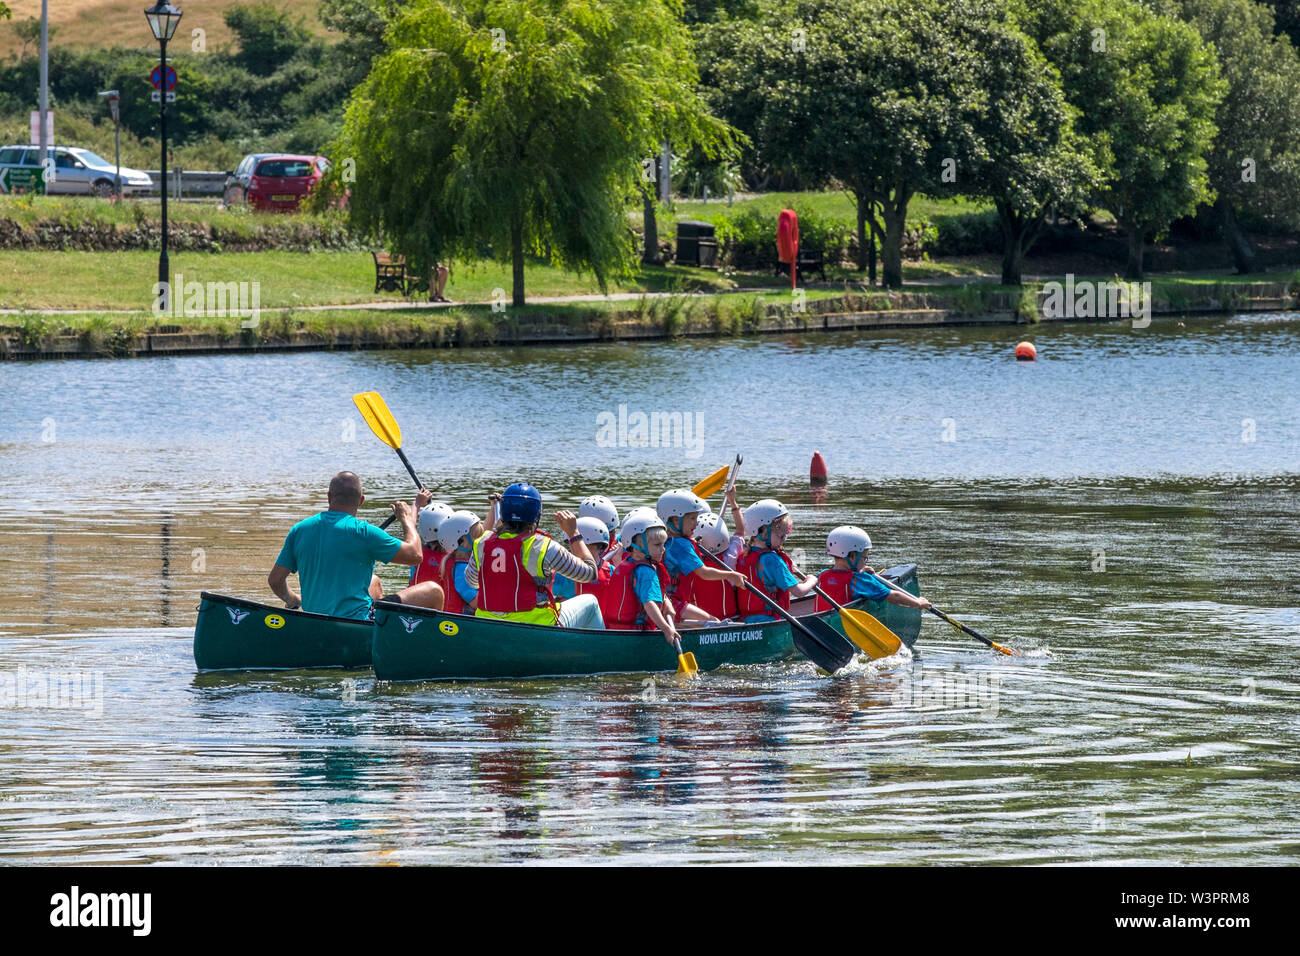 Les élèves de l'école primaire bénéficiant d'une activité de plein air comme leçon qu'ils ont plaisir à canot sur le lac de plaisance Jardin Trenance à Newquay en Cornouailles. Banque D'Images